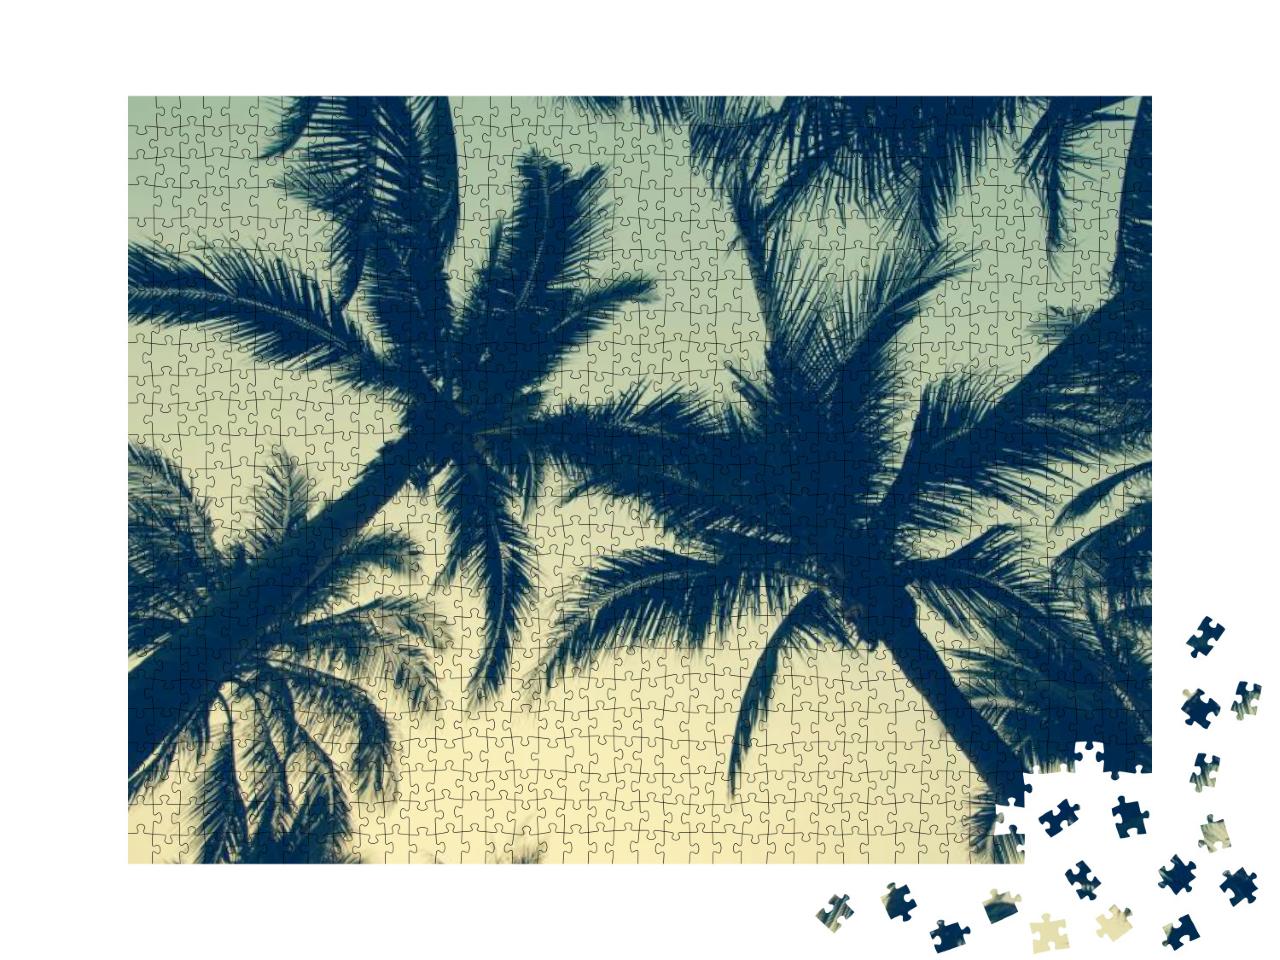 Puzzle 1000 Teile „Palmen im Abendhimmel“